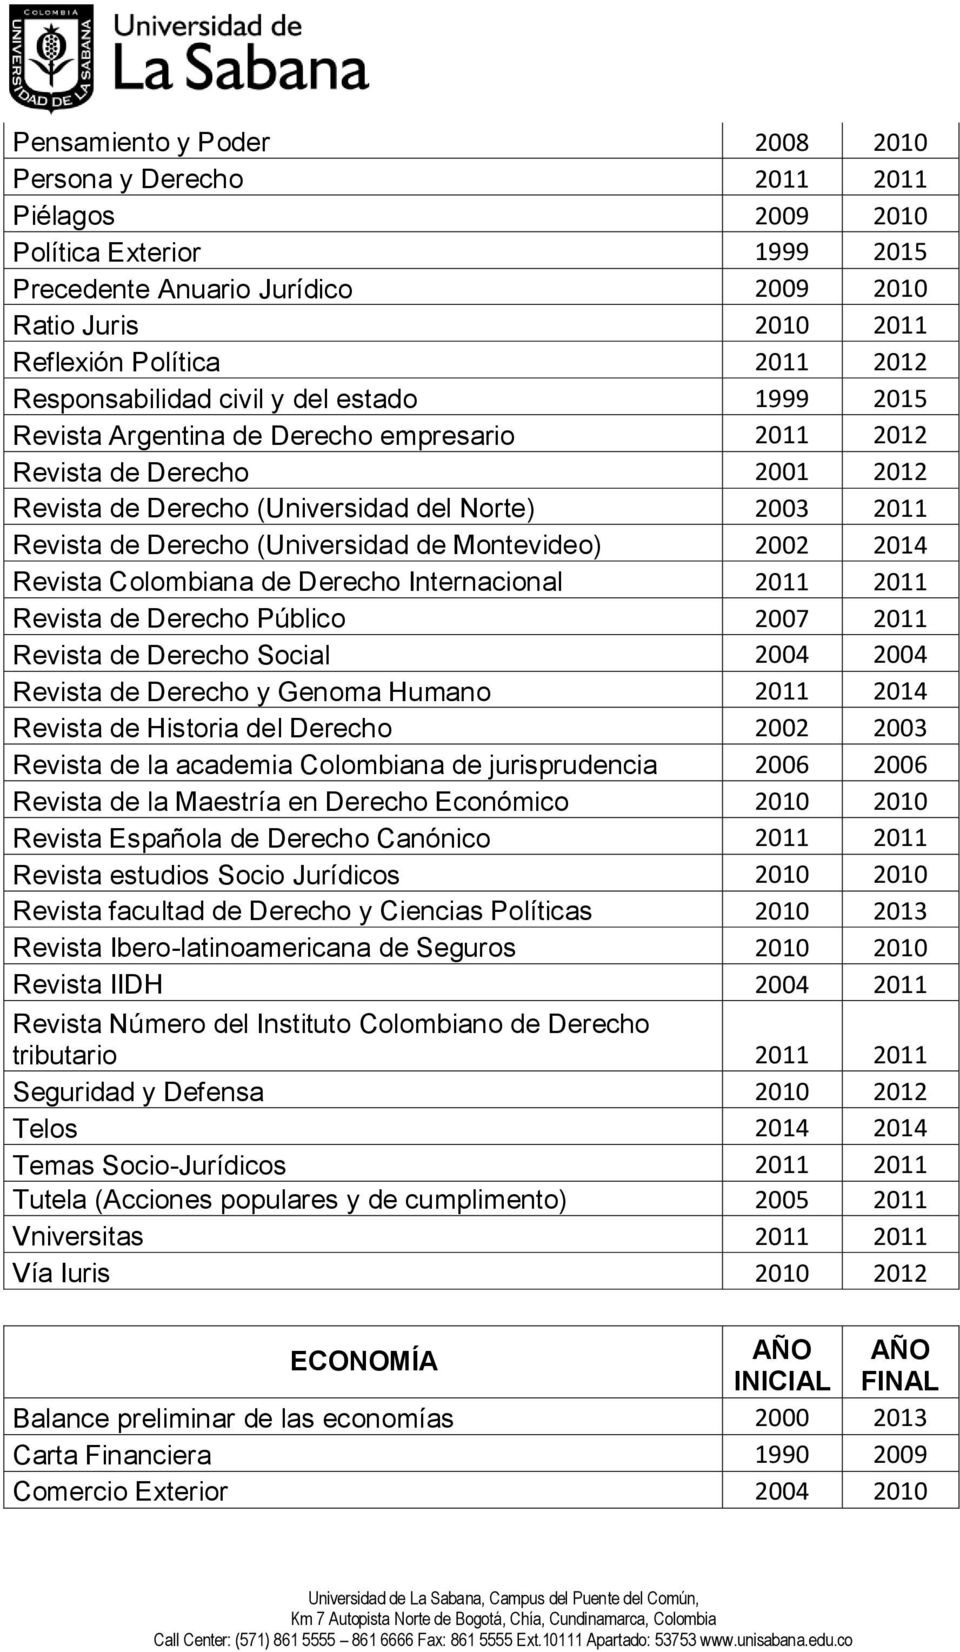 (Universidad de Montevideo) 2002 2014 Revista Colombiana de Derecho Internacional 2011 2011 Revista de Derecho Público 2007 2011 Revista de Derecho Social 2004 2004 Revista de Derecho y Genoma Humano